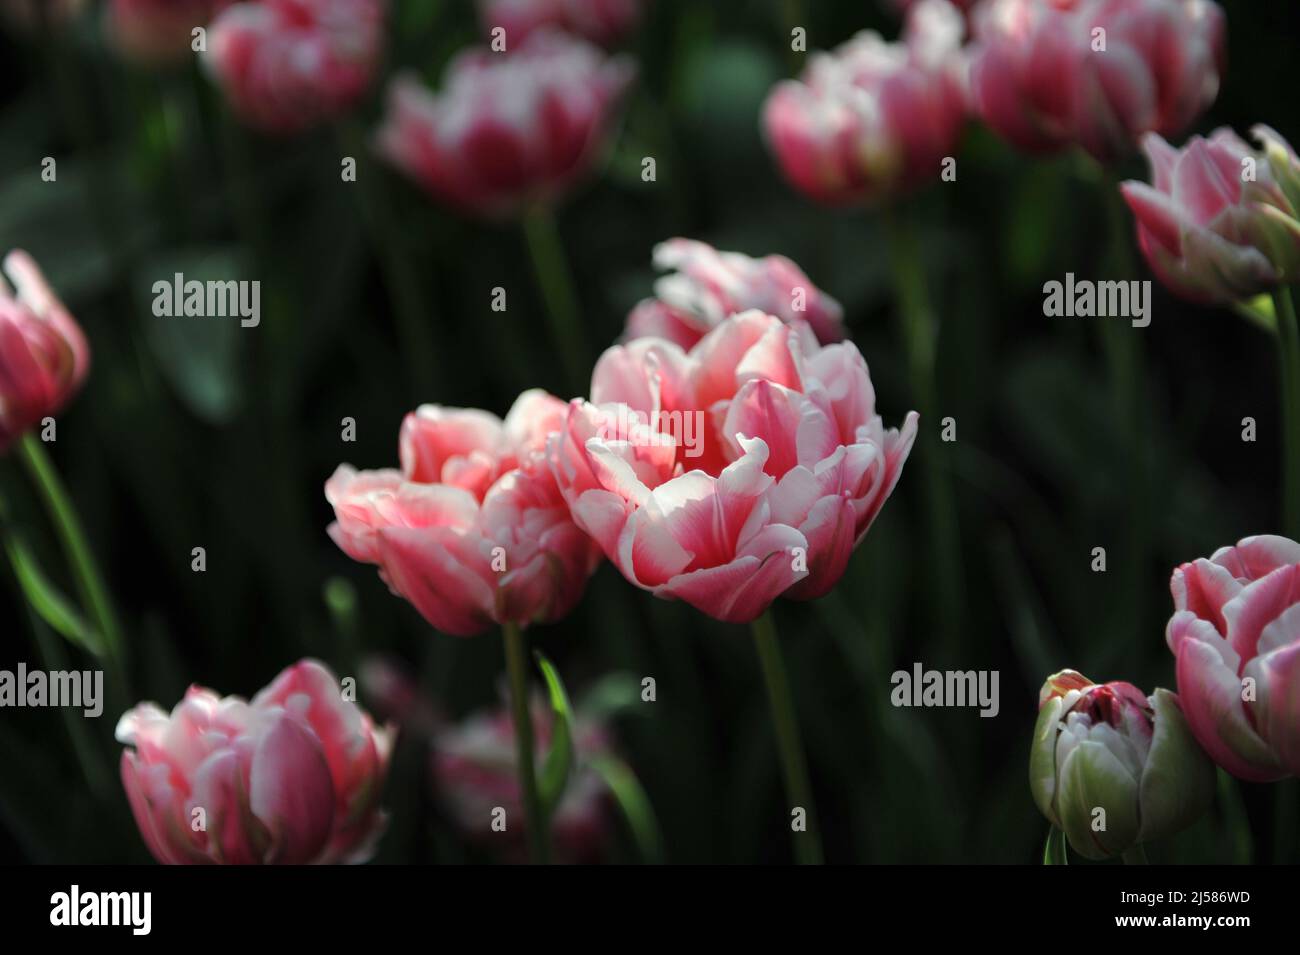 Tulipani doppi (Tulipa) a fiore di peonia rosa e bianca fioriti Fantasy Lady fioriscono in un giardino nel mese di marzo Foto Stock